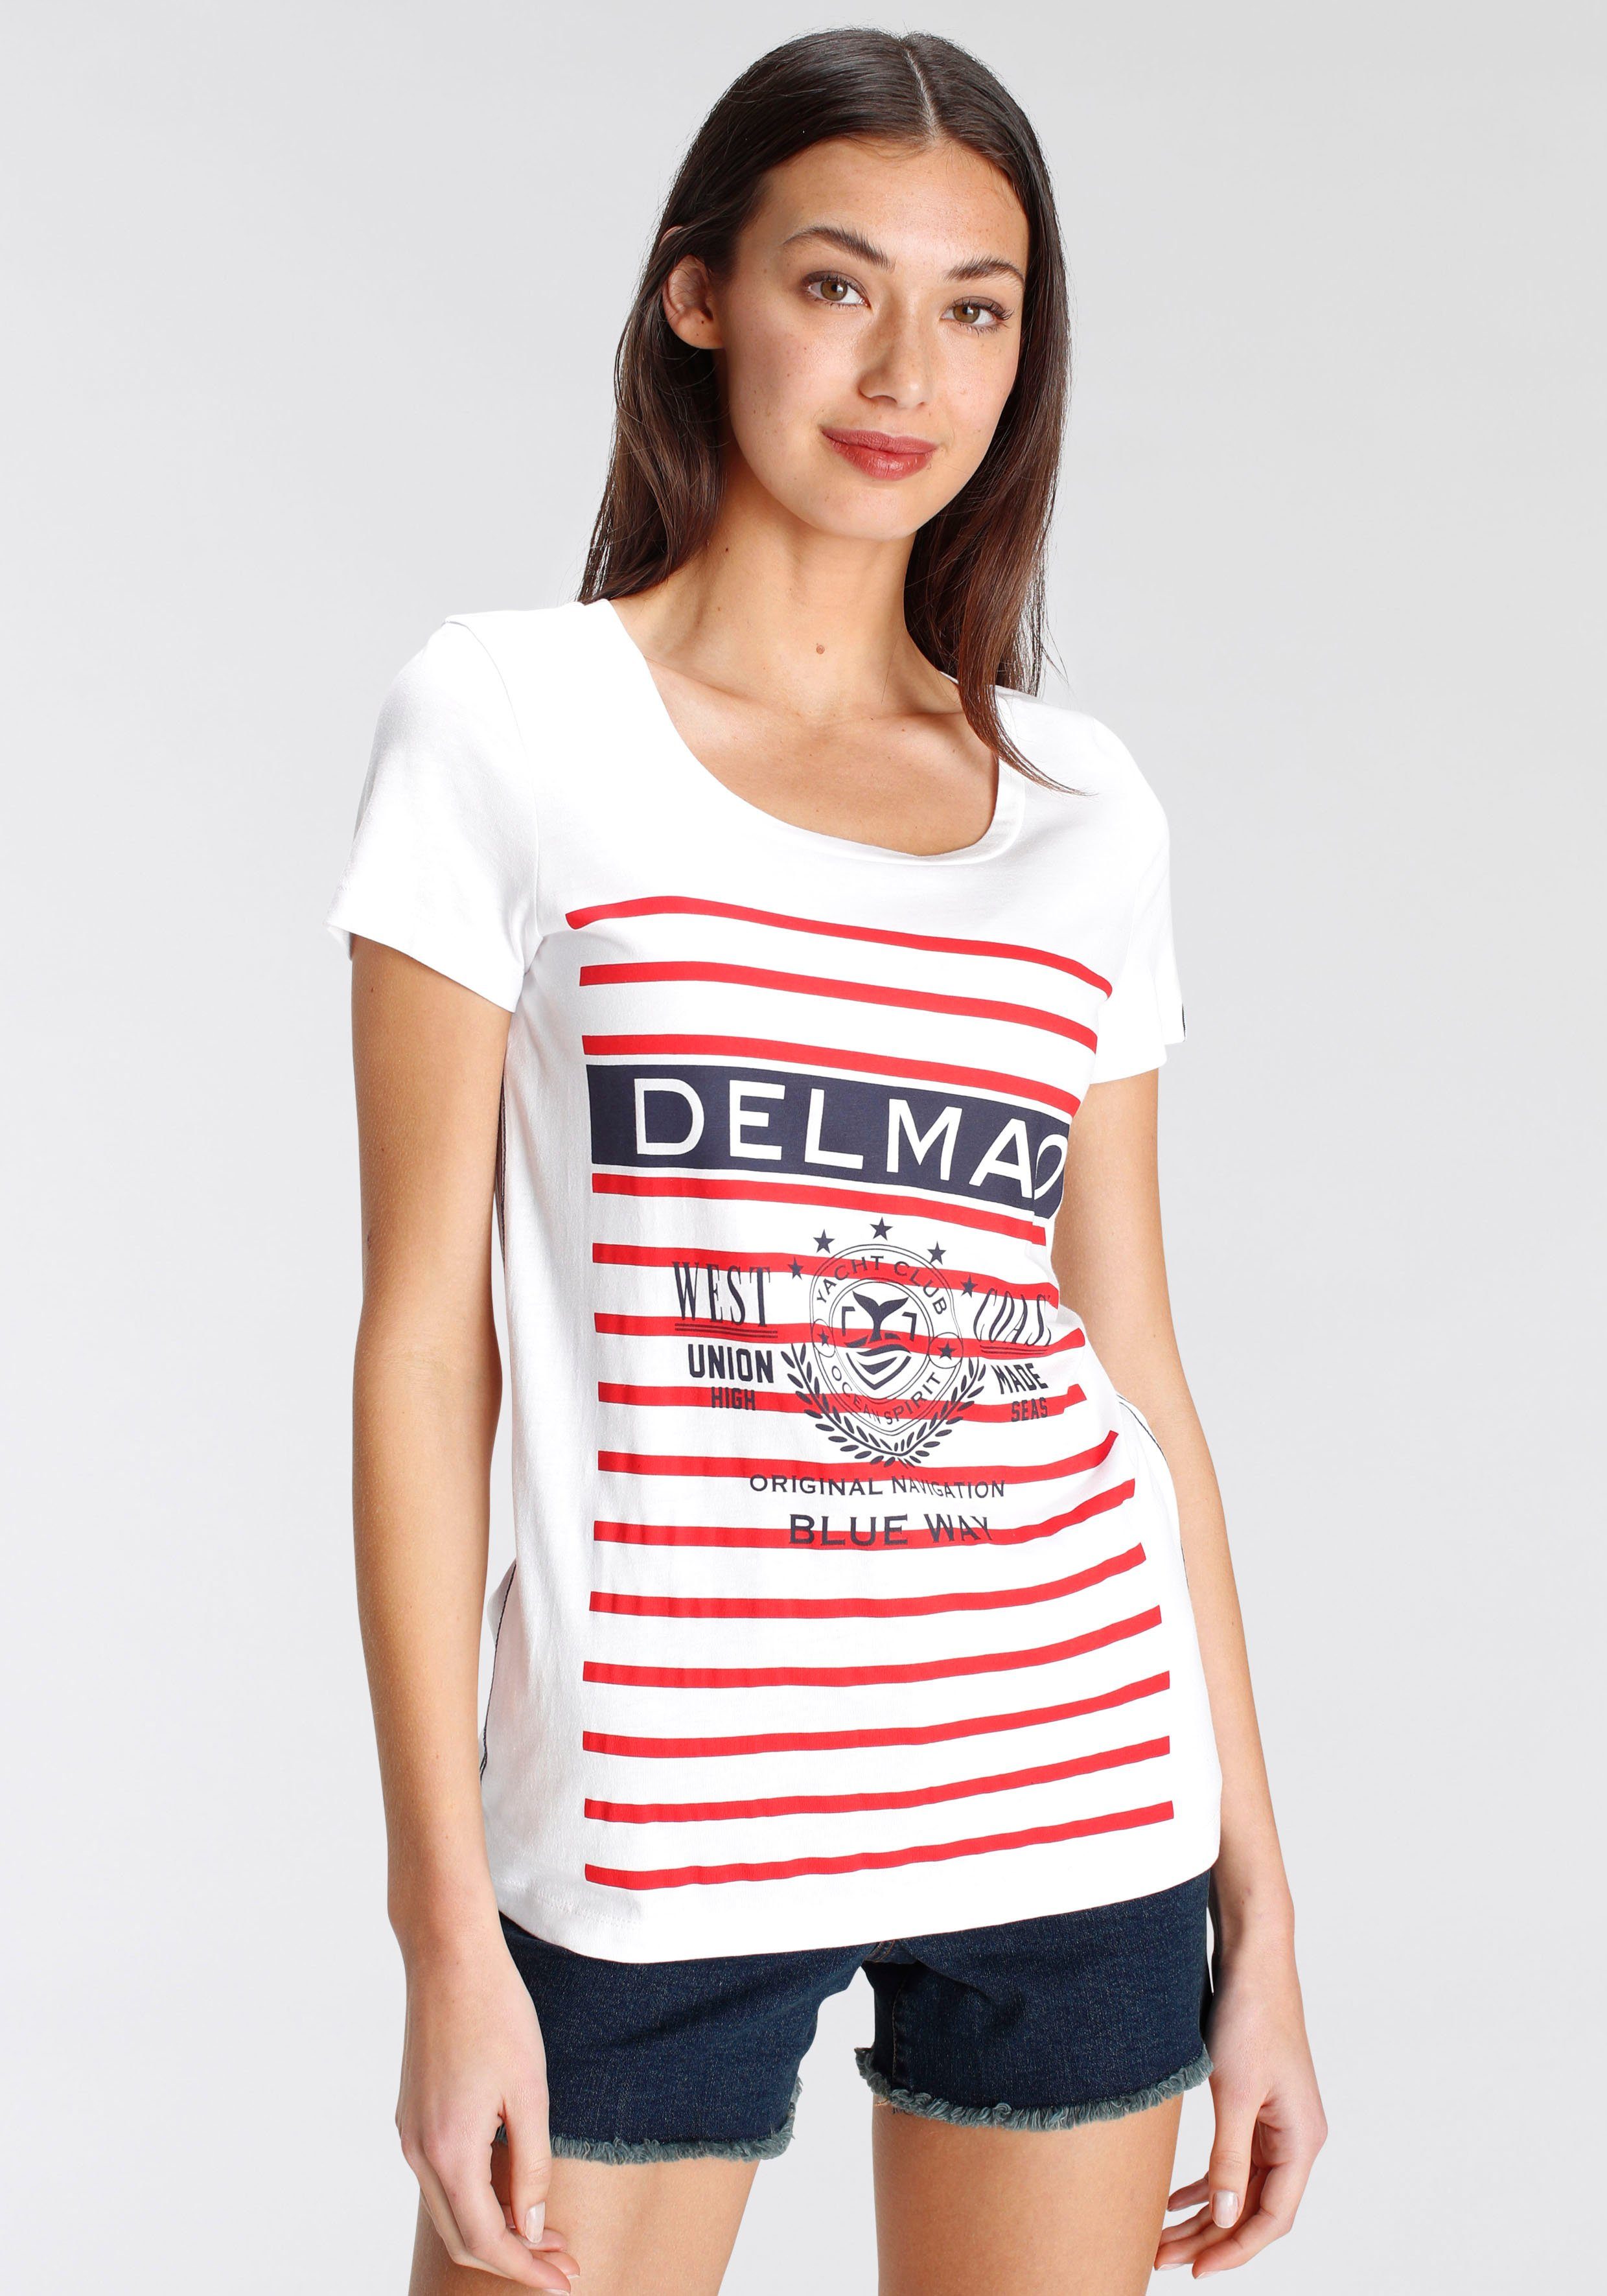 DELMAO Print-Shirt mit sportivem großen Marken-Logodruck - MARKE! NEUE